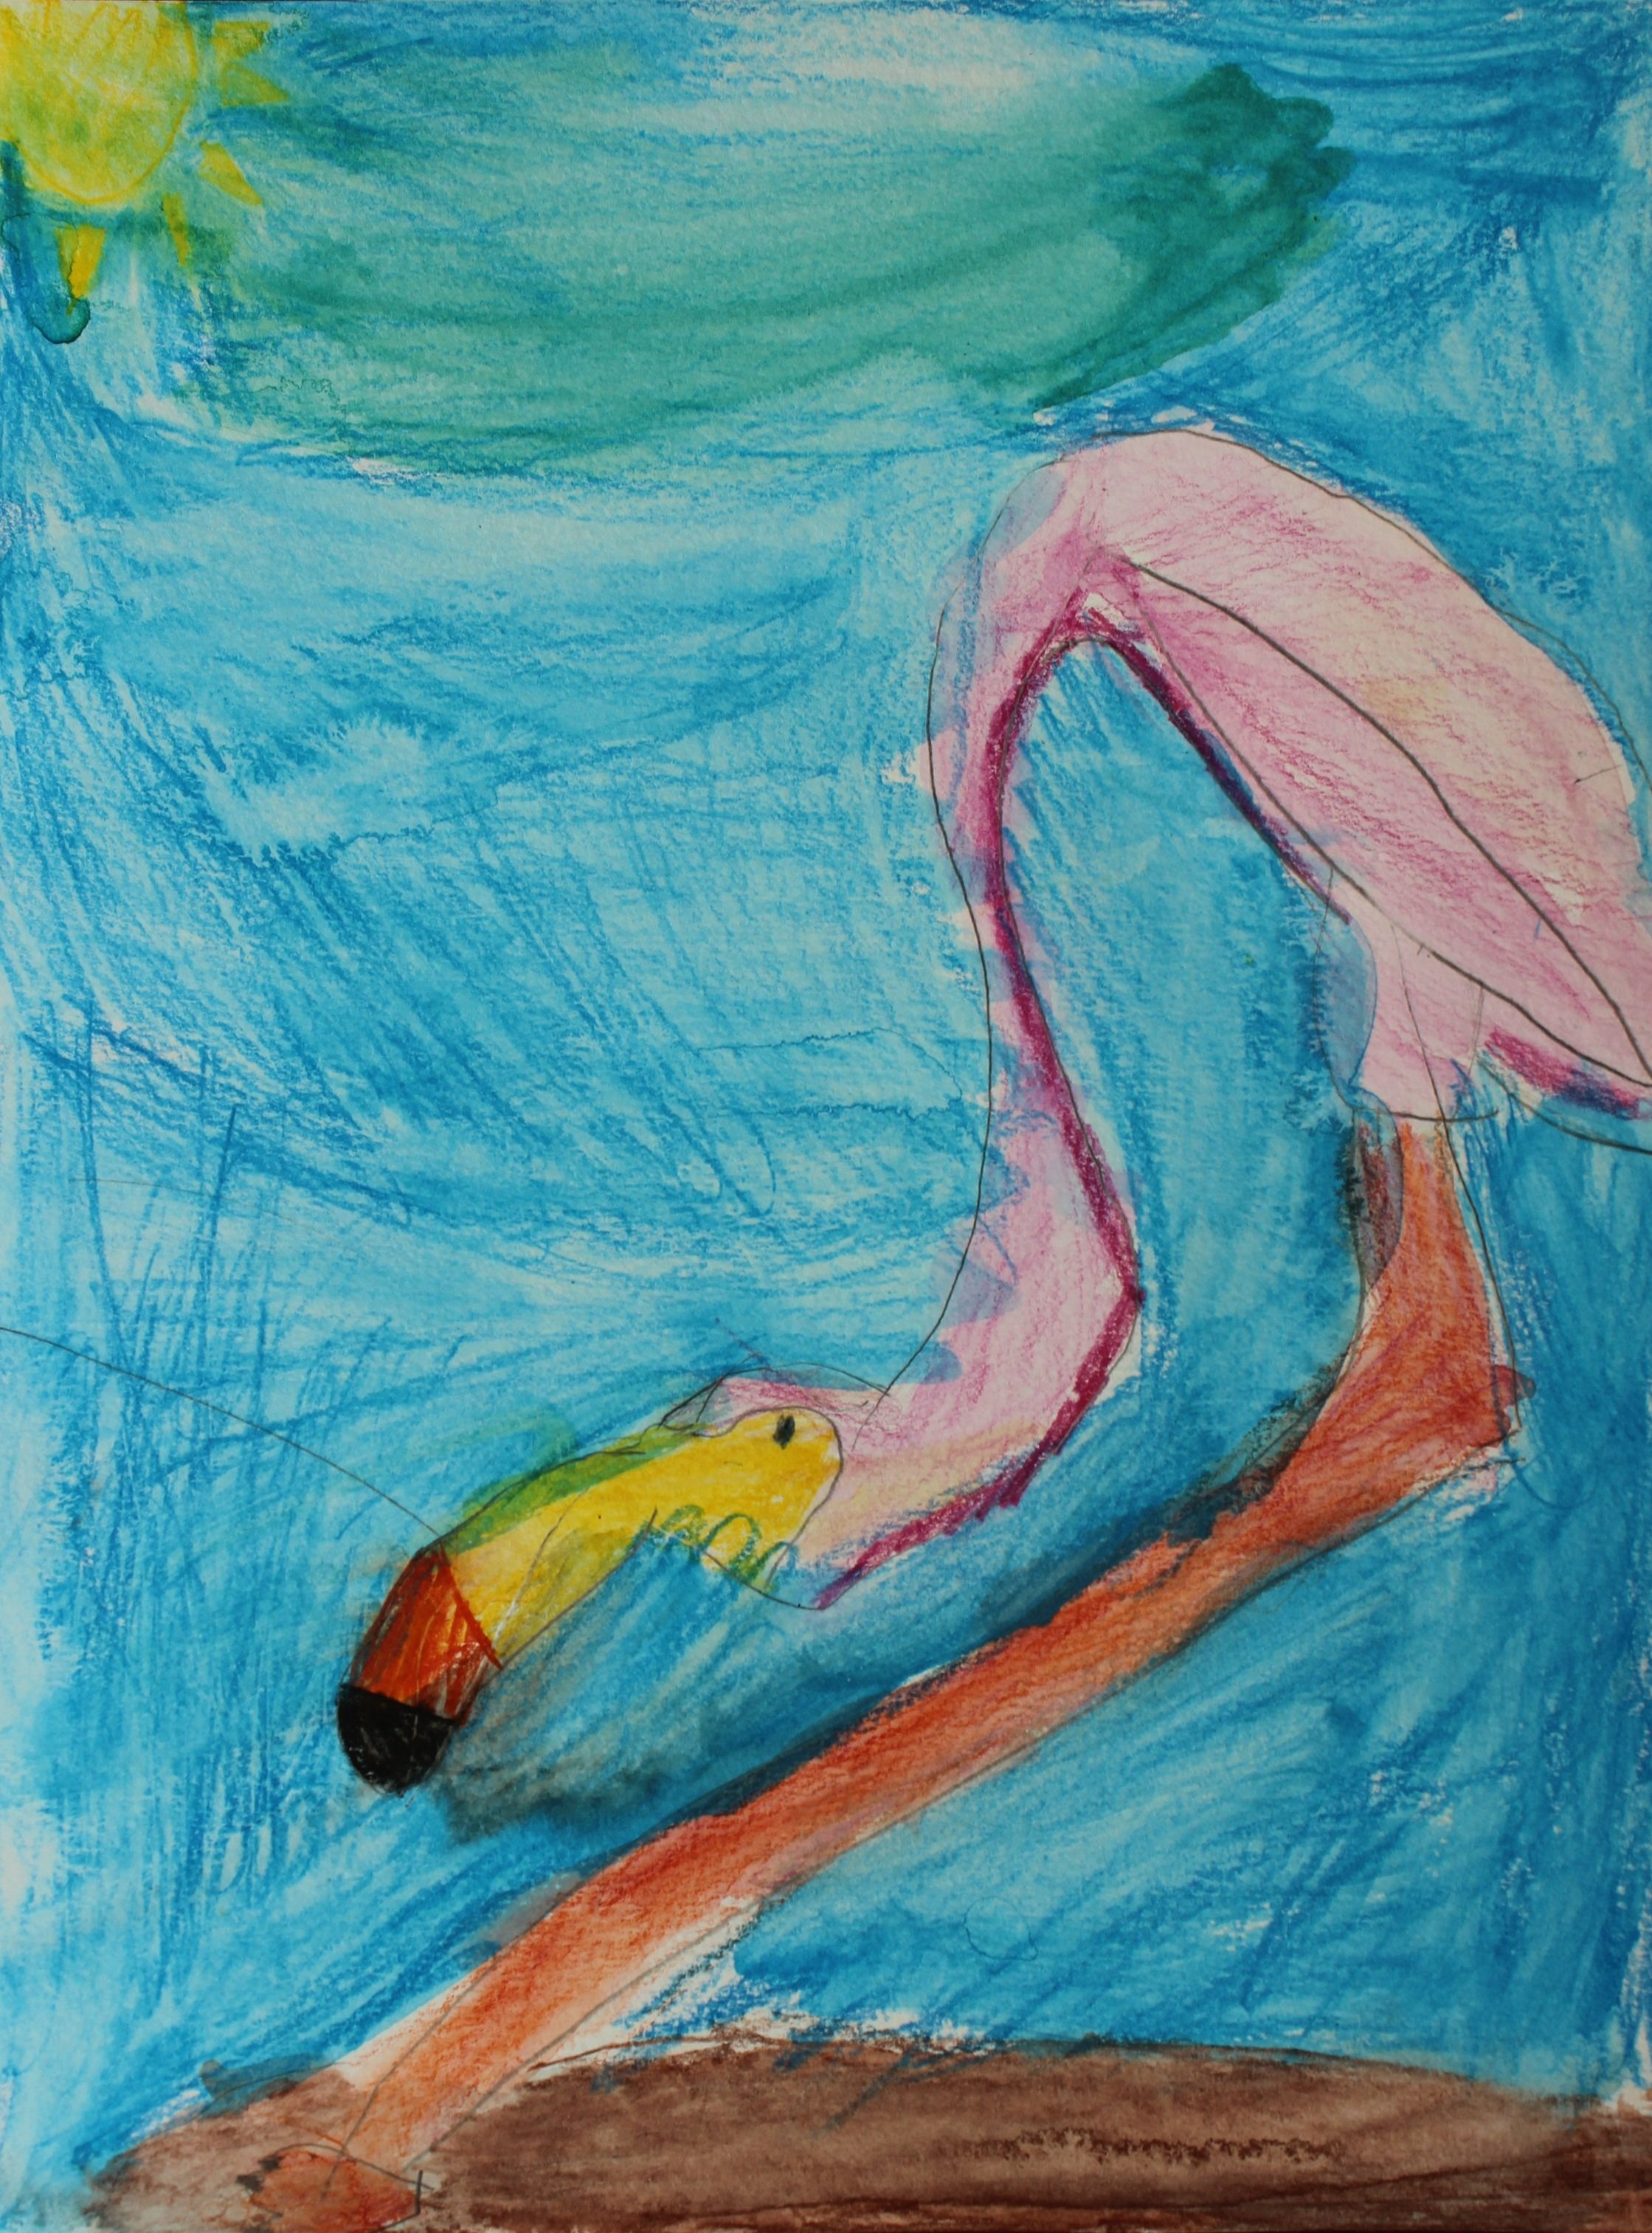 Bridget, age 5, watercolor pencil